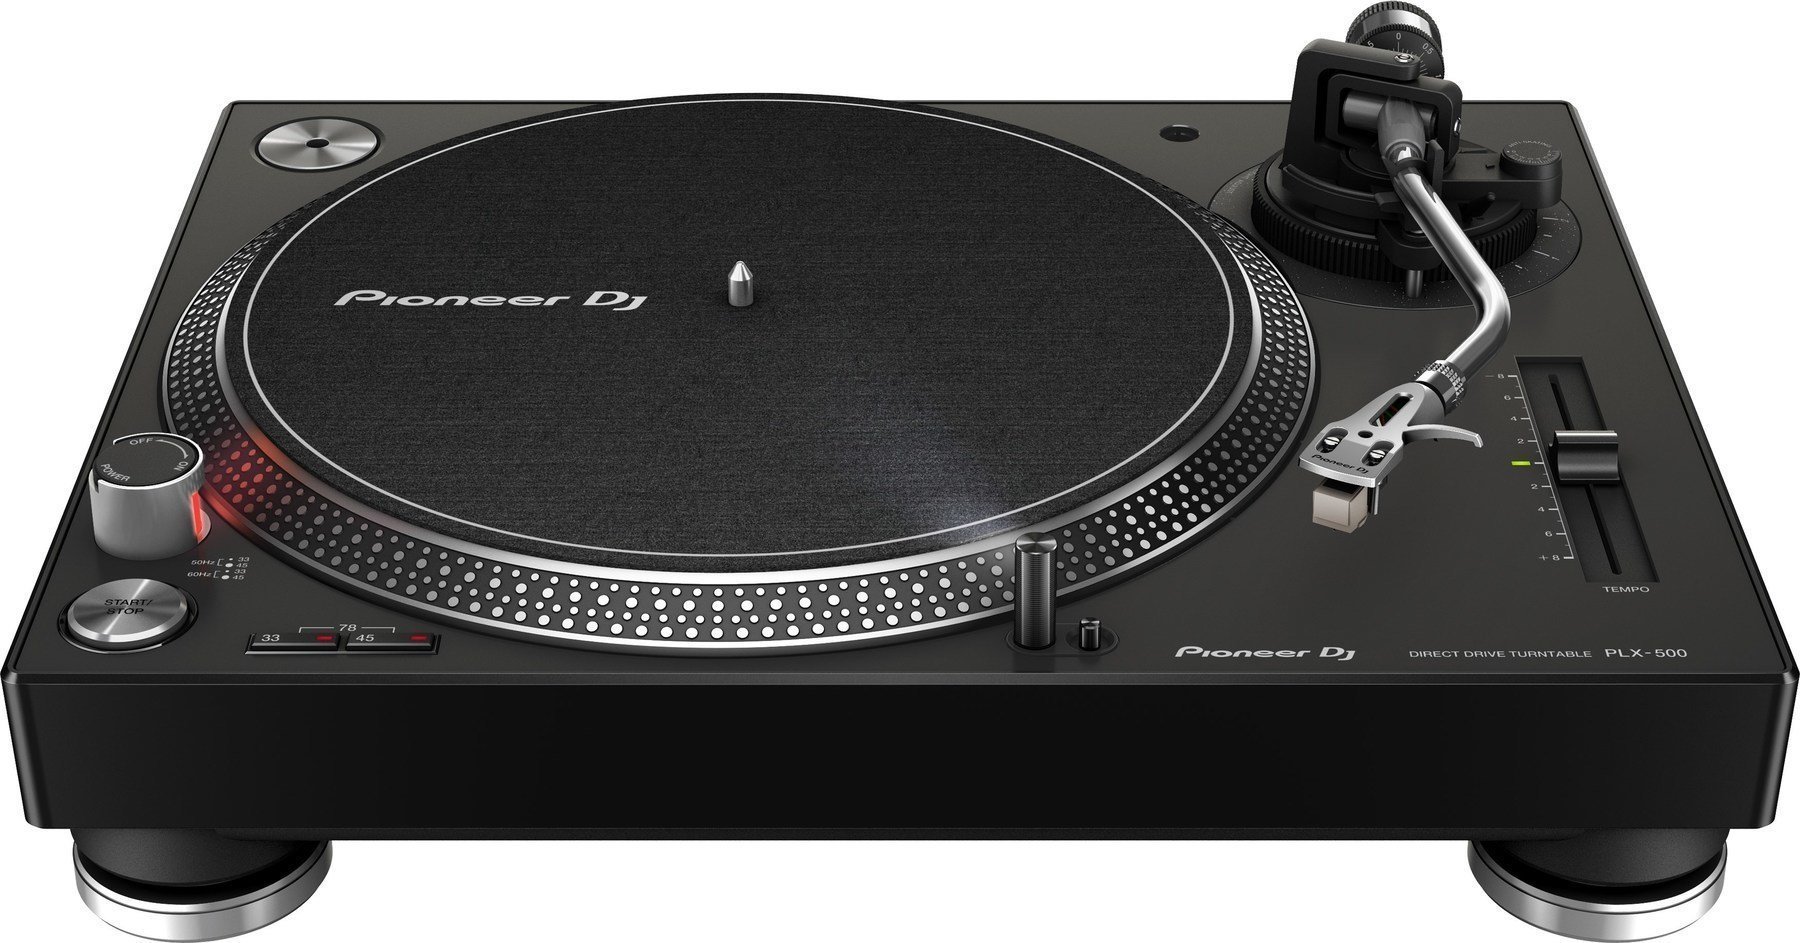 DJ Turntable Pioneer Dj PLX-500 Black DJ Turntable (Pre-owned)